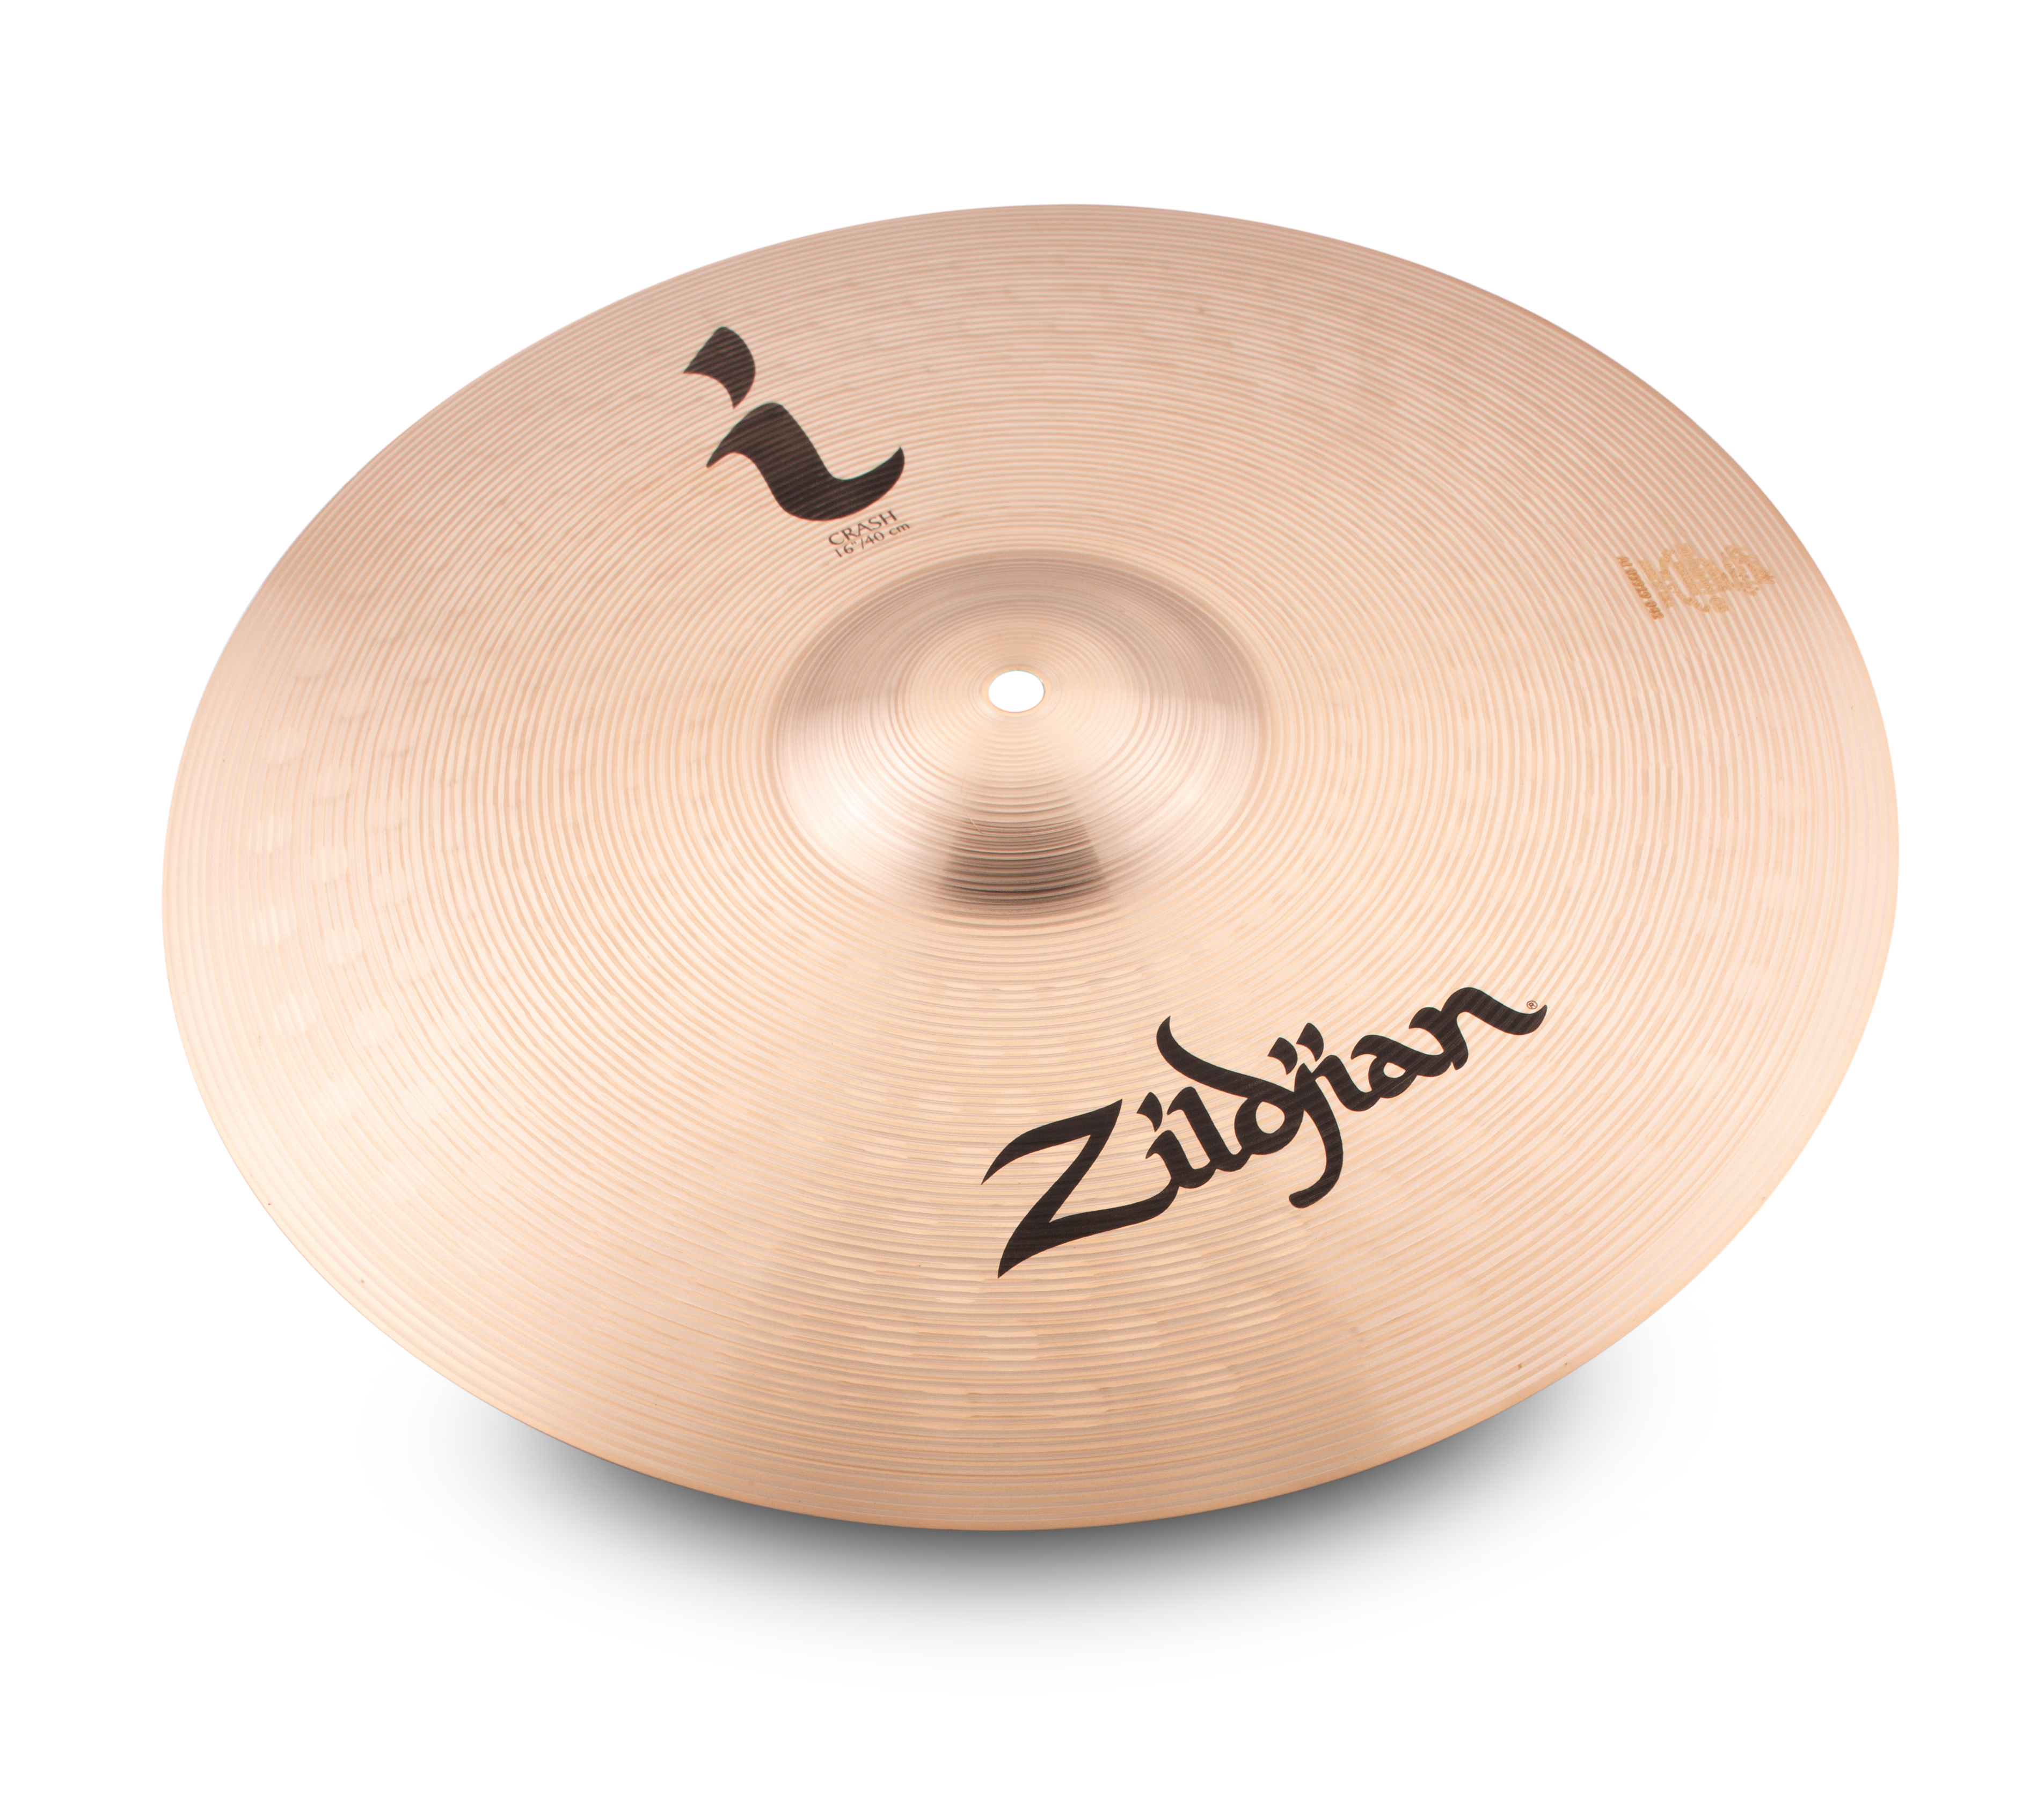 Zildjian 16" I Series Crash Cymbal - image 1 of 6